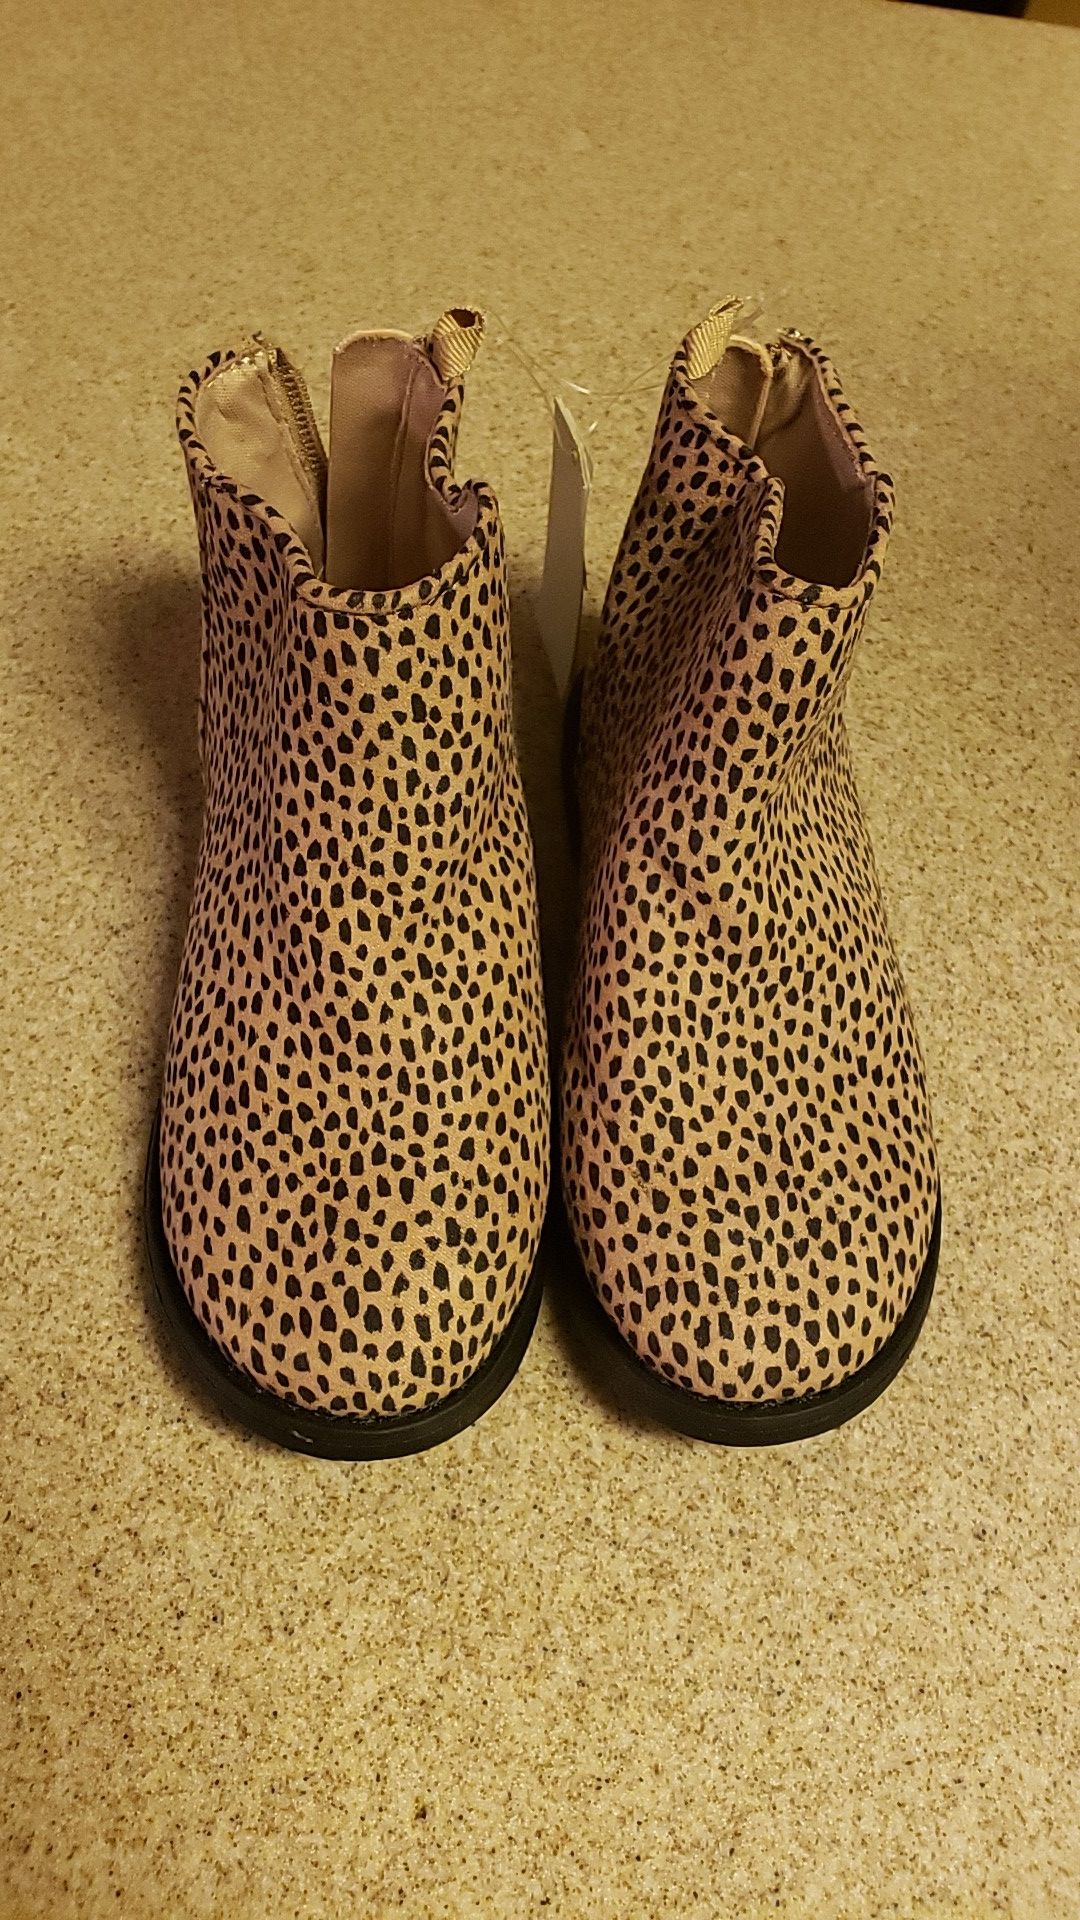 Little Girl Gap Leopard Boots